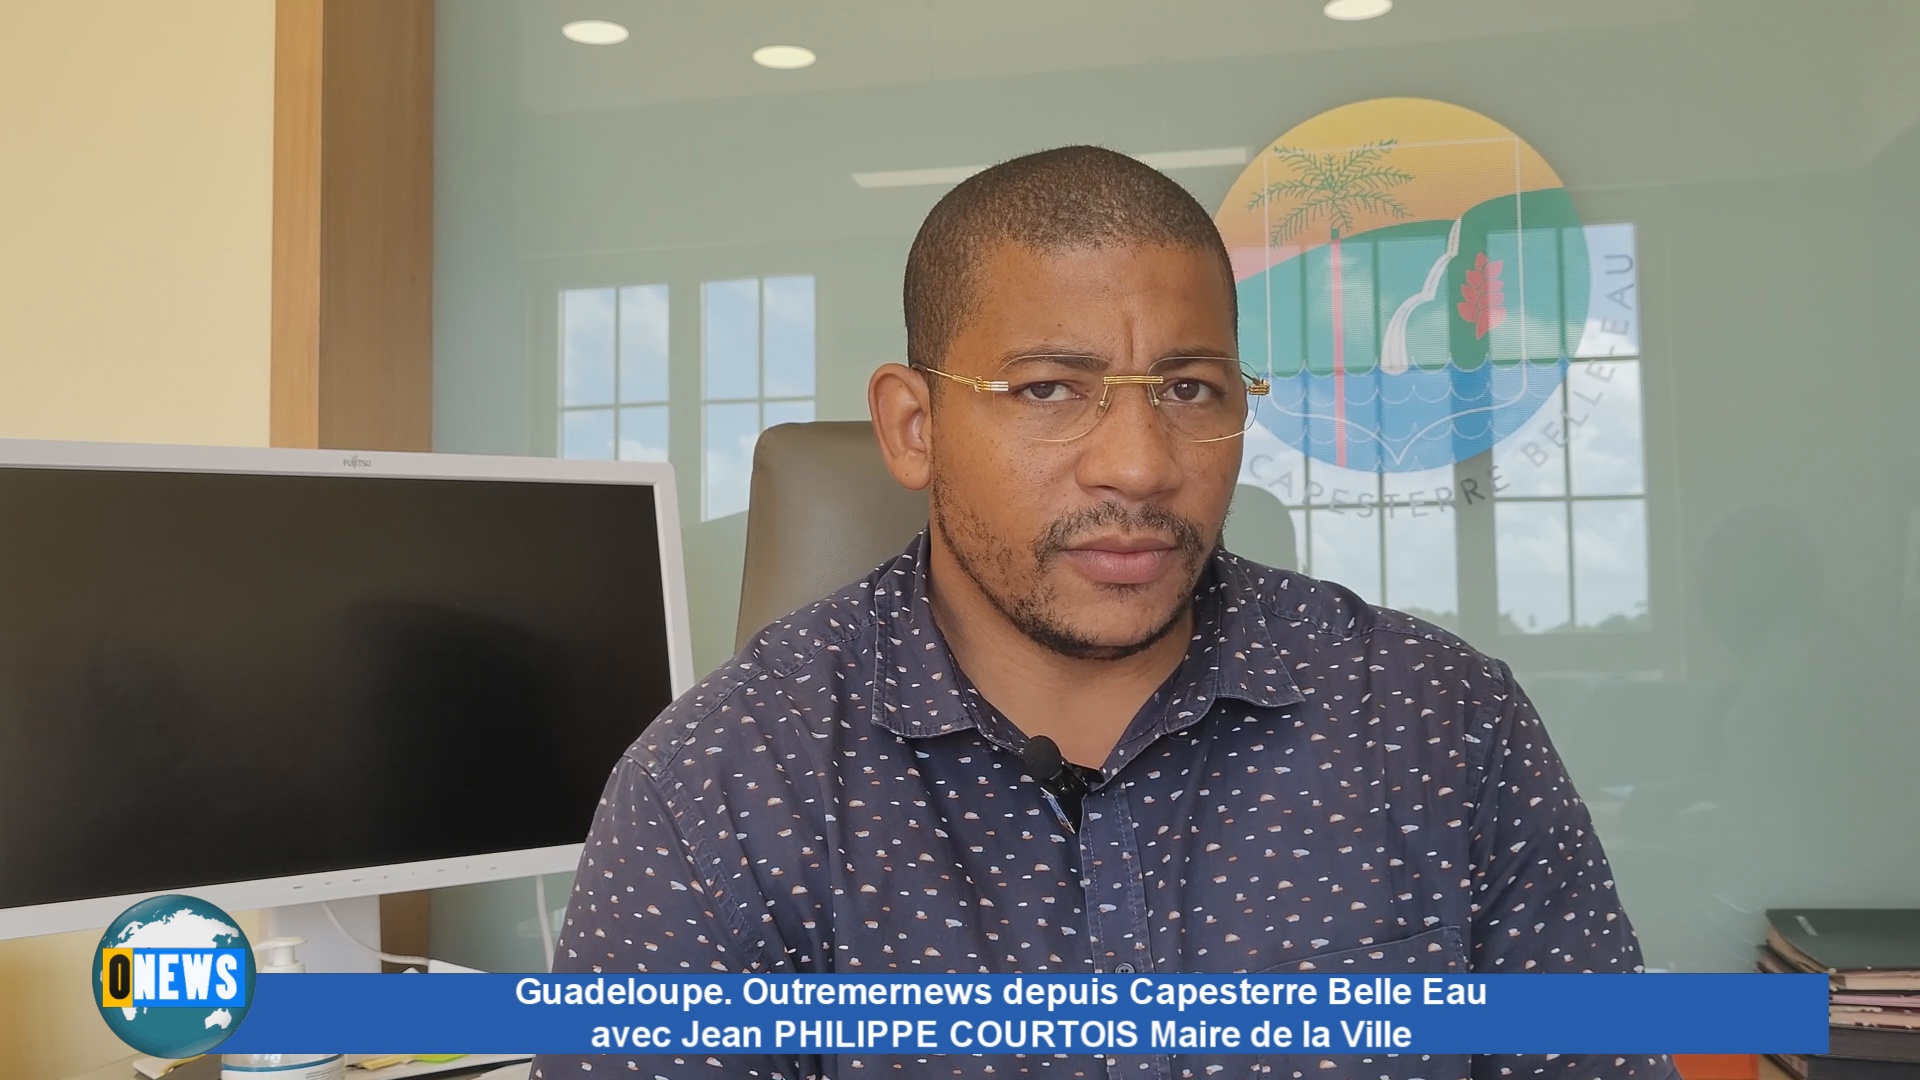 [Vidéo] Guadeloupe. Outremernews depuis Capesterre Belle Eau avec Jean PHILIPPE COURTOIS Maire de la Ville